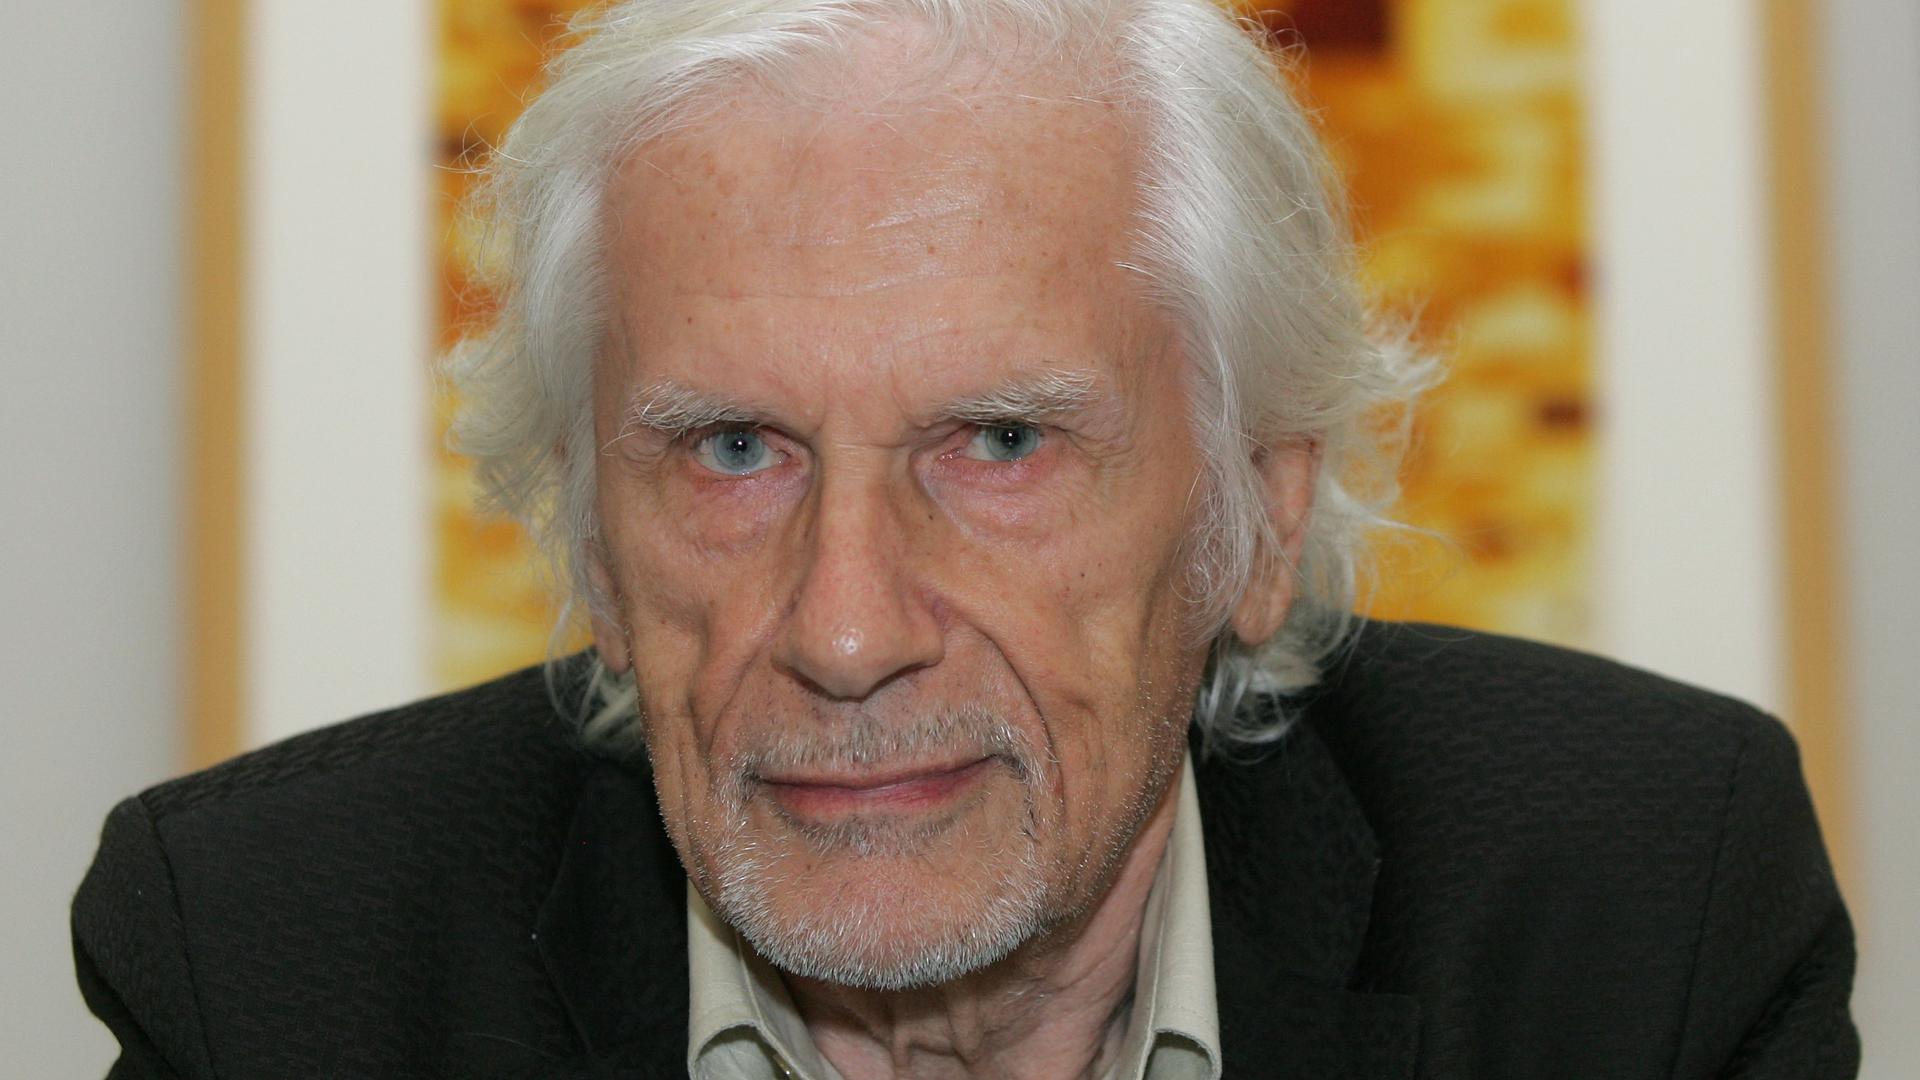 Als Pionier in der Computergrafik wurde Herbert W. Franke, hier auf einem Bild von 2007, in Karlsruhe zuletzt 2018 mit der Verleihung der Ehrendoktorwürde durch die Hochschule für Gestaltung gewürdigt.